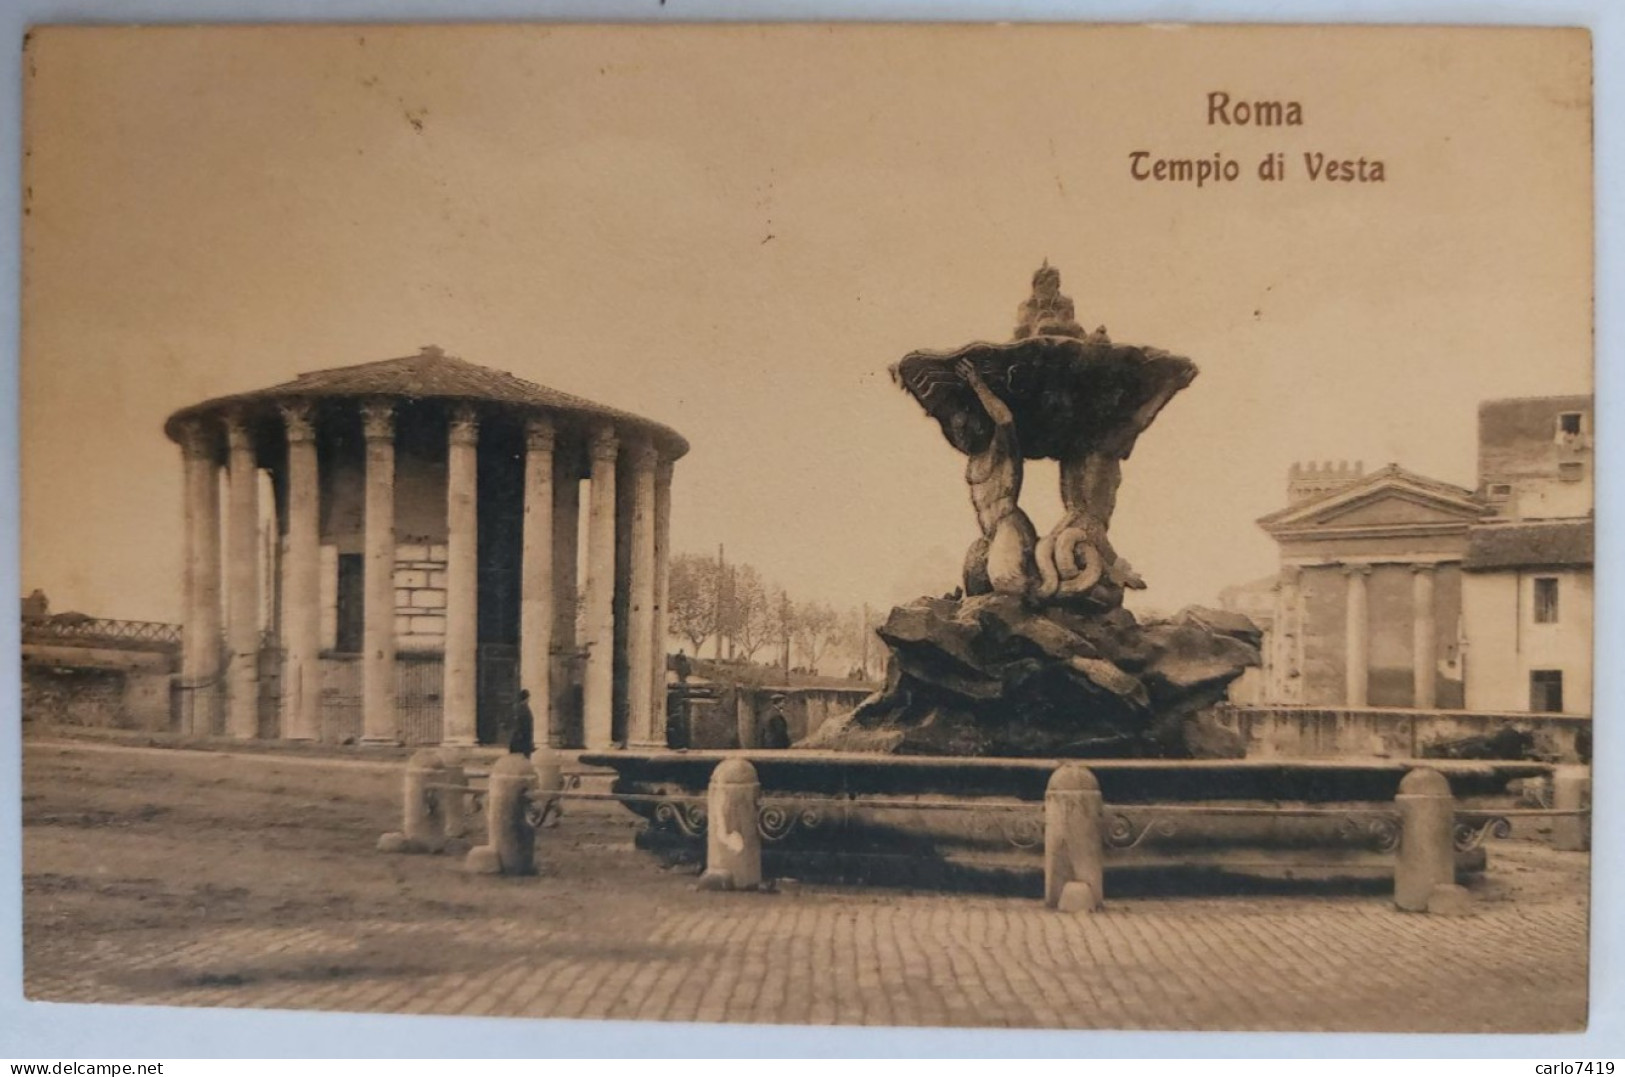 Viaggiata 1910 - Roma - Tempio Di Vesta - X Parma  - Crt0049 - Andere Monumente & Gebäude